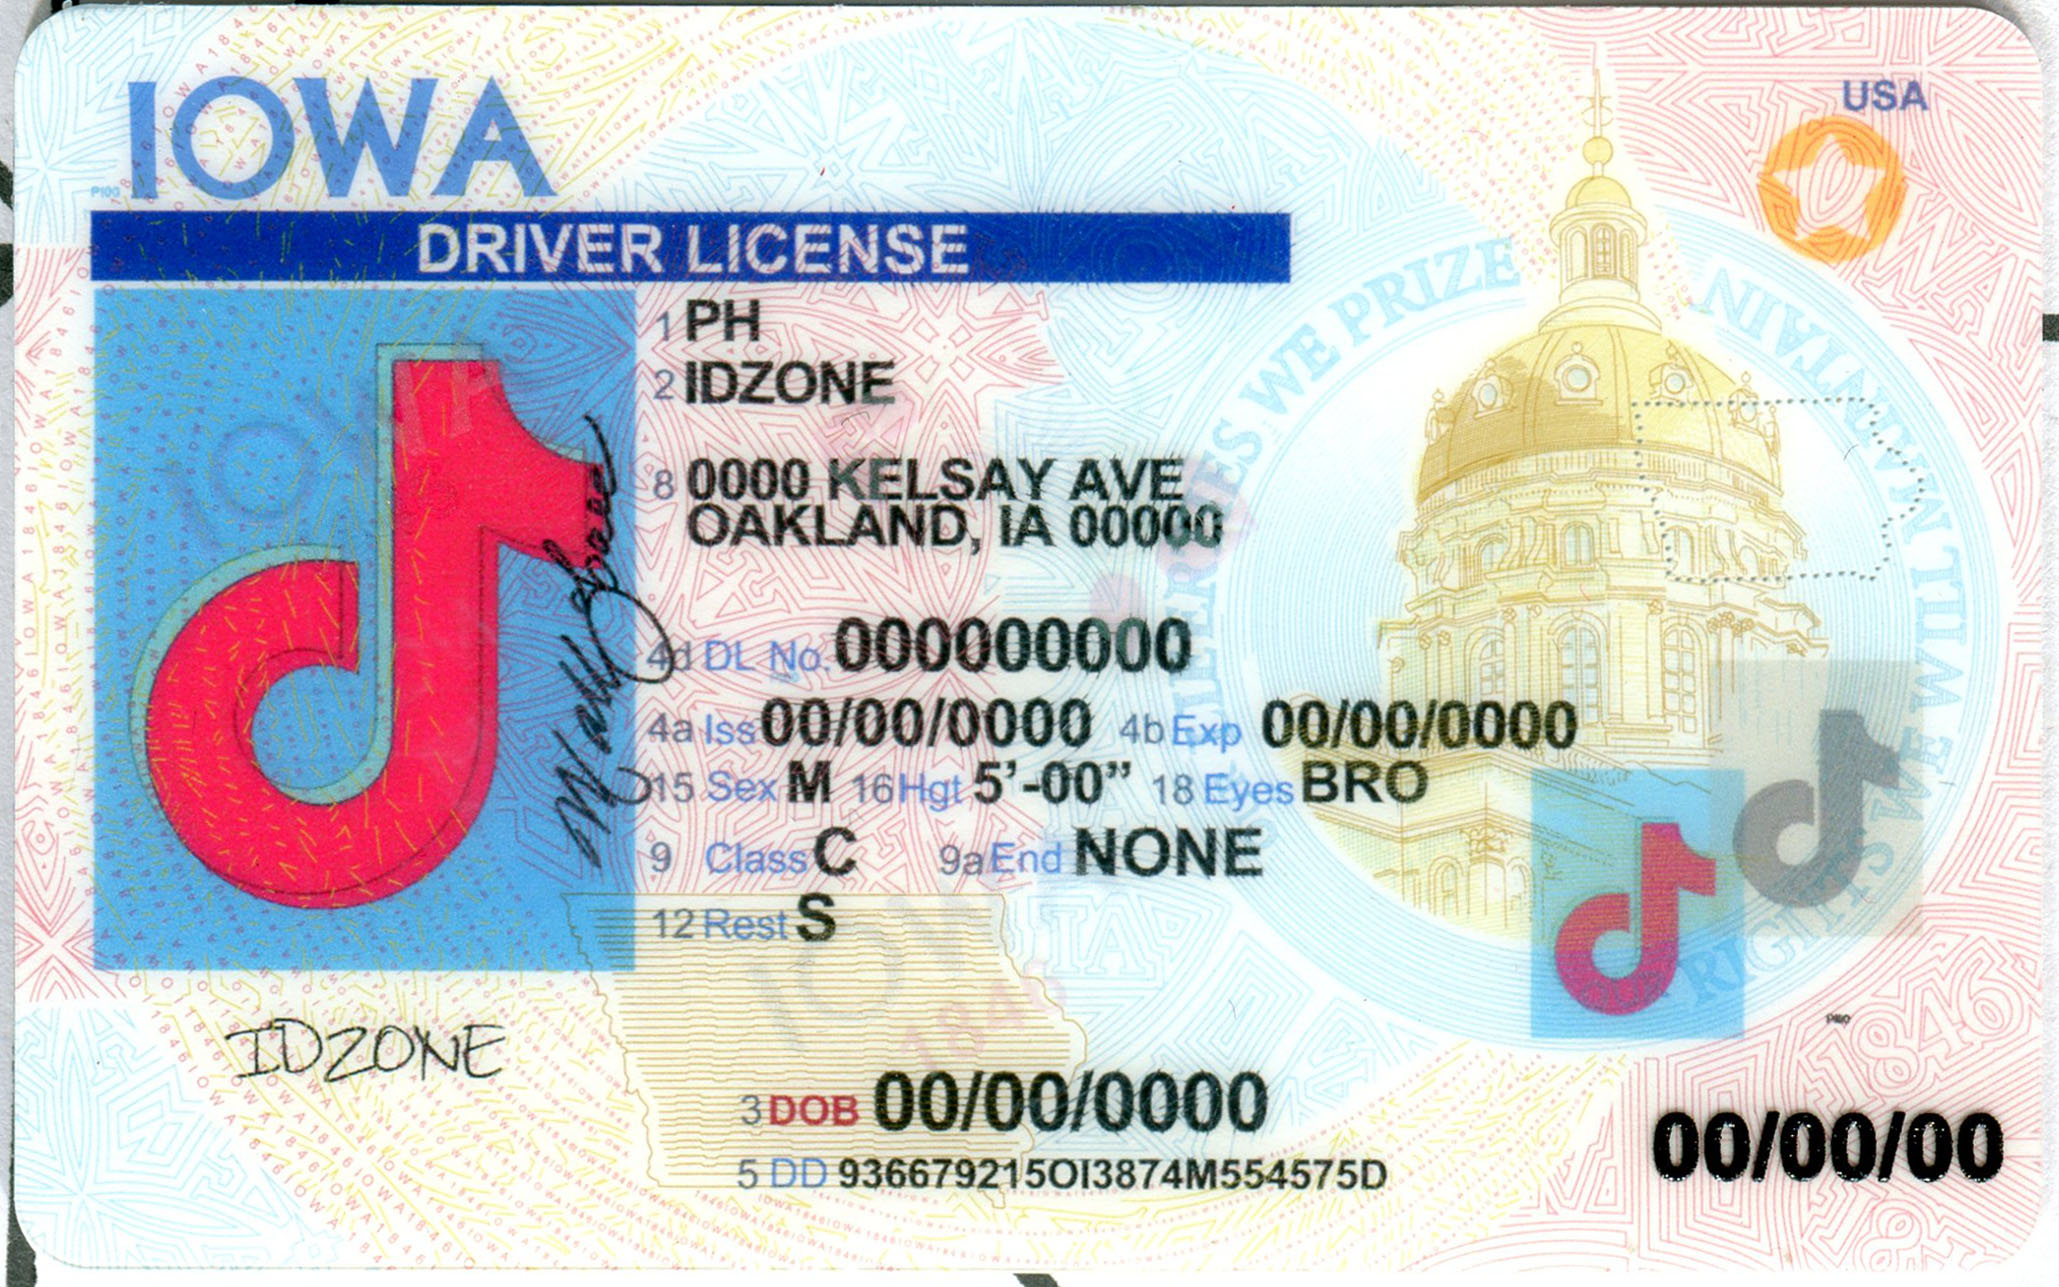 IOWA-New fake id